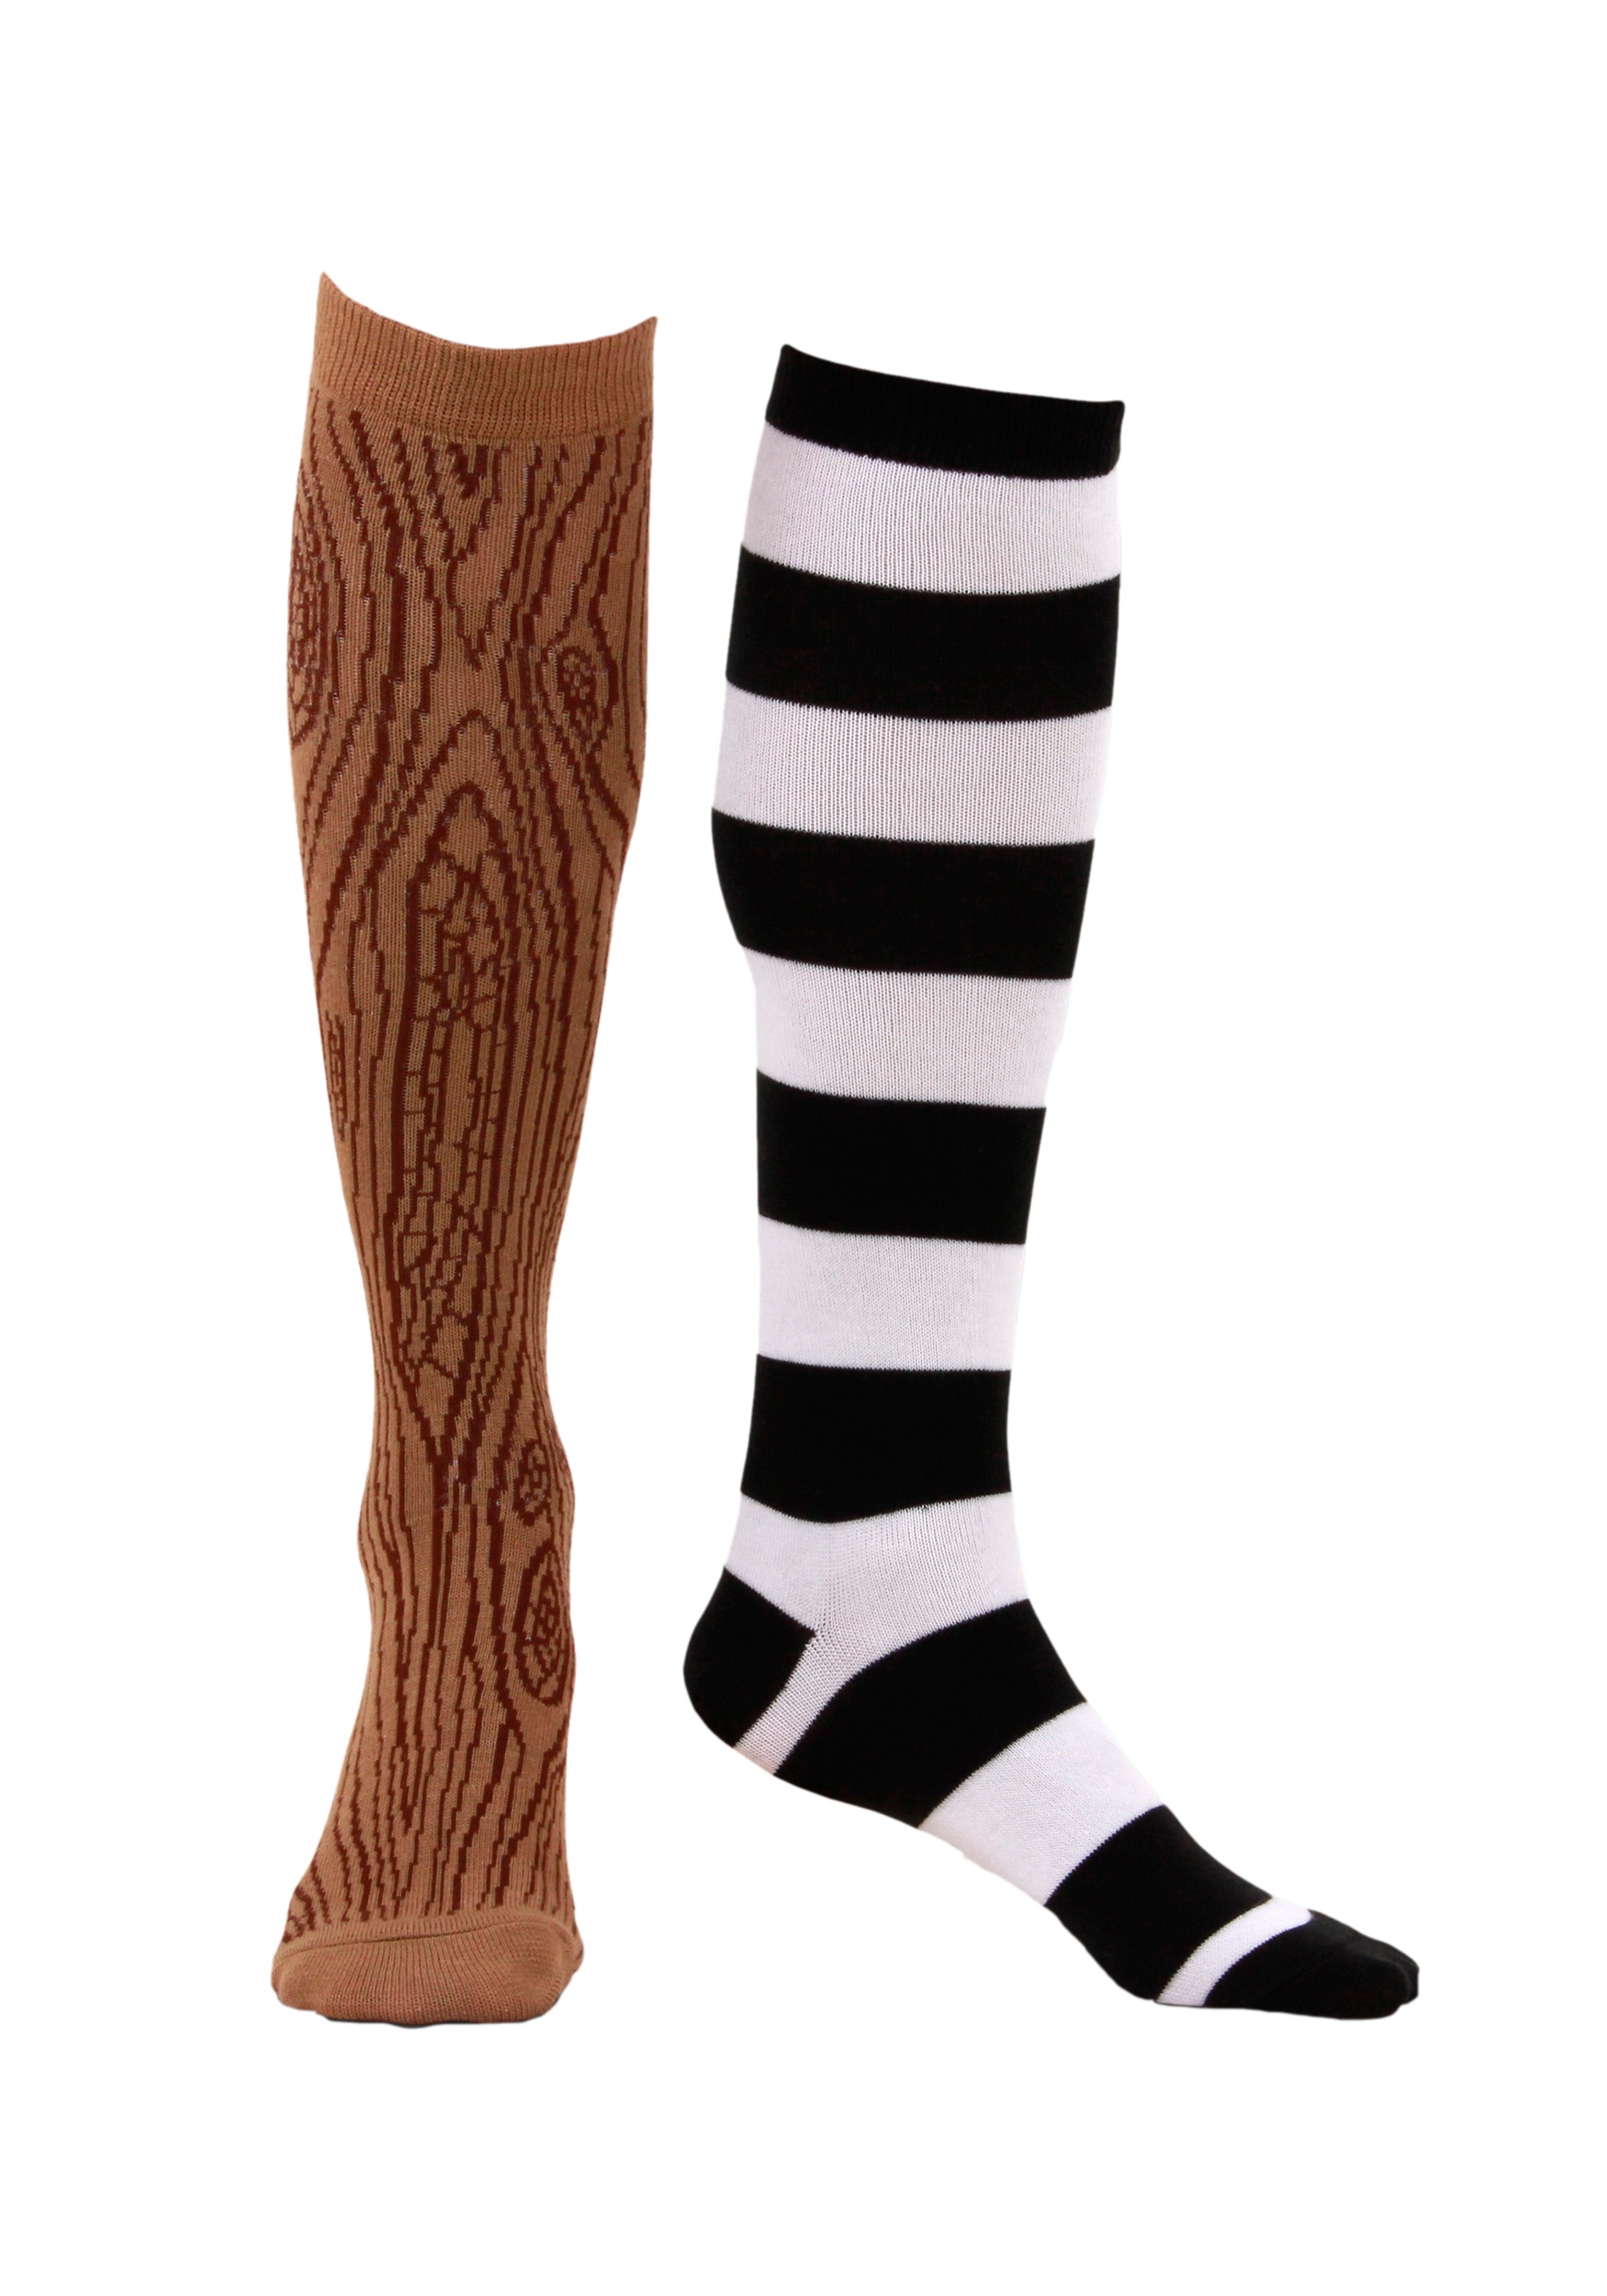 Knee-High Mismatched Pirate Socks Men